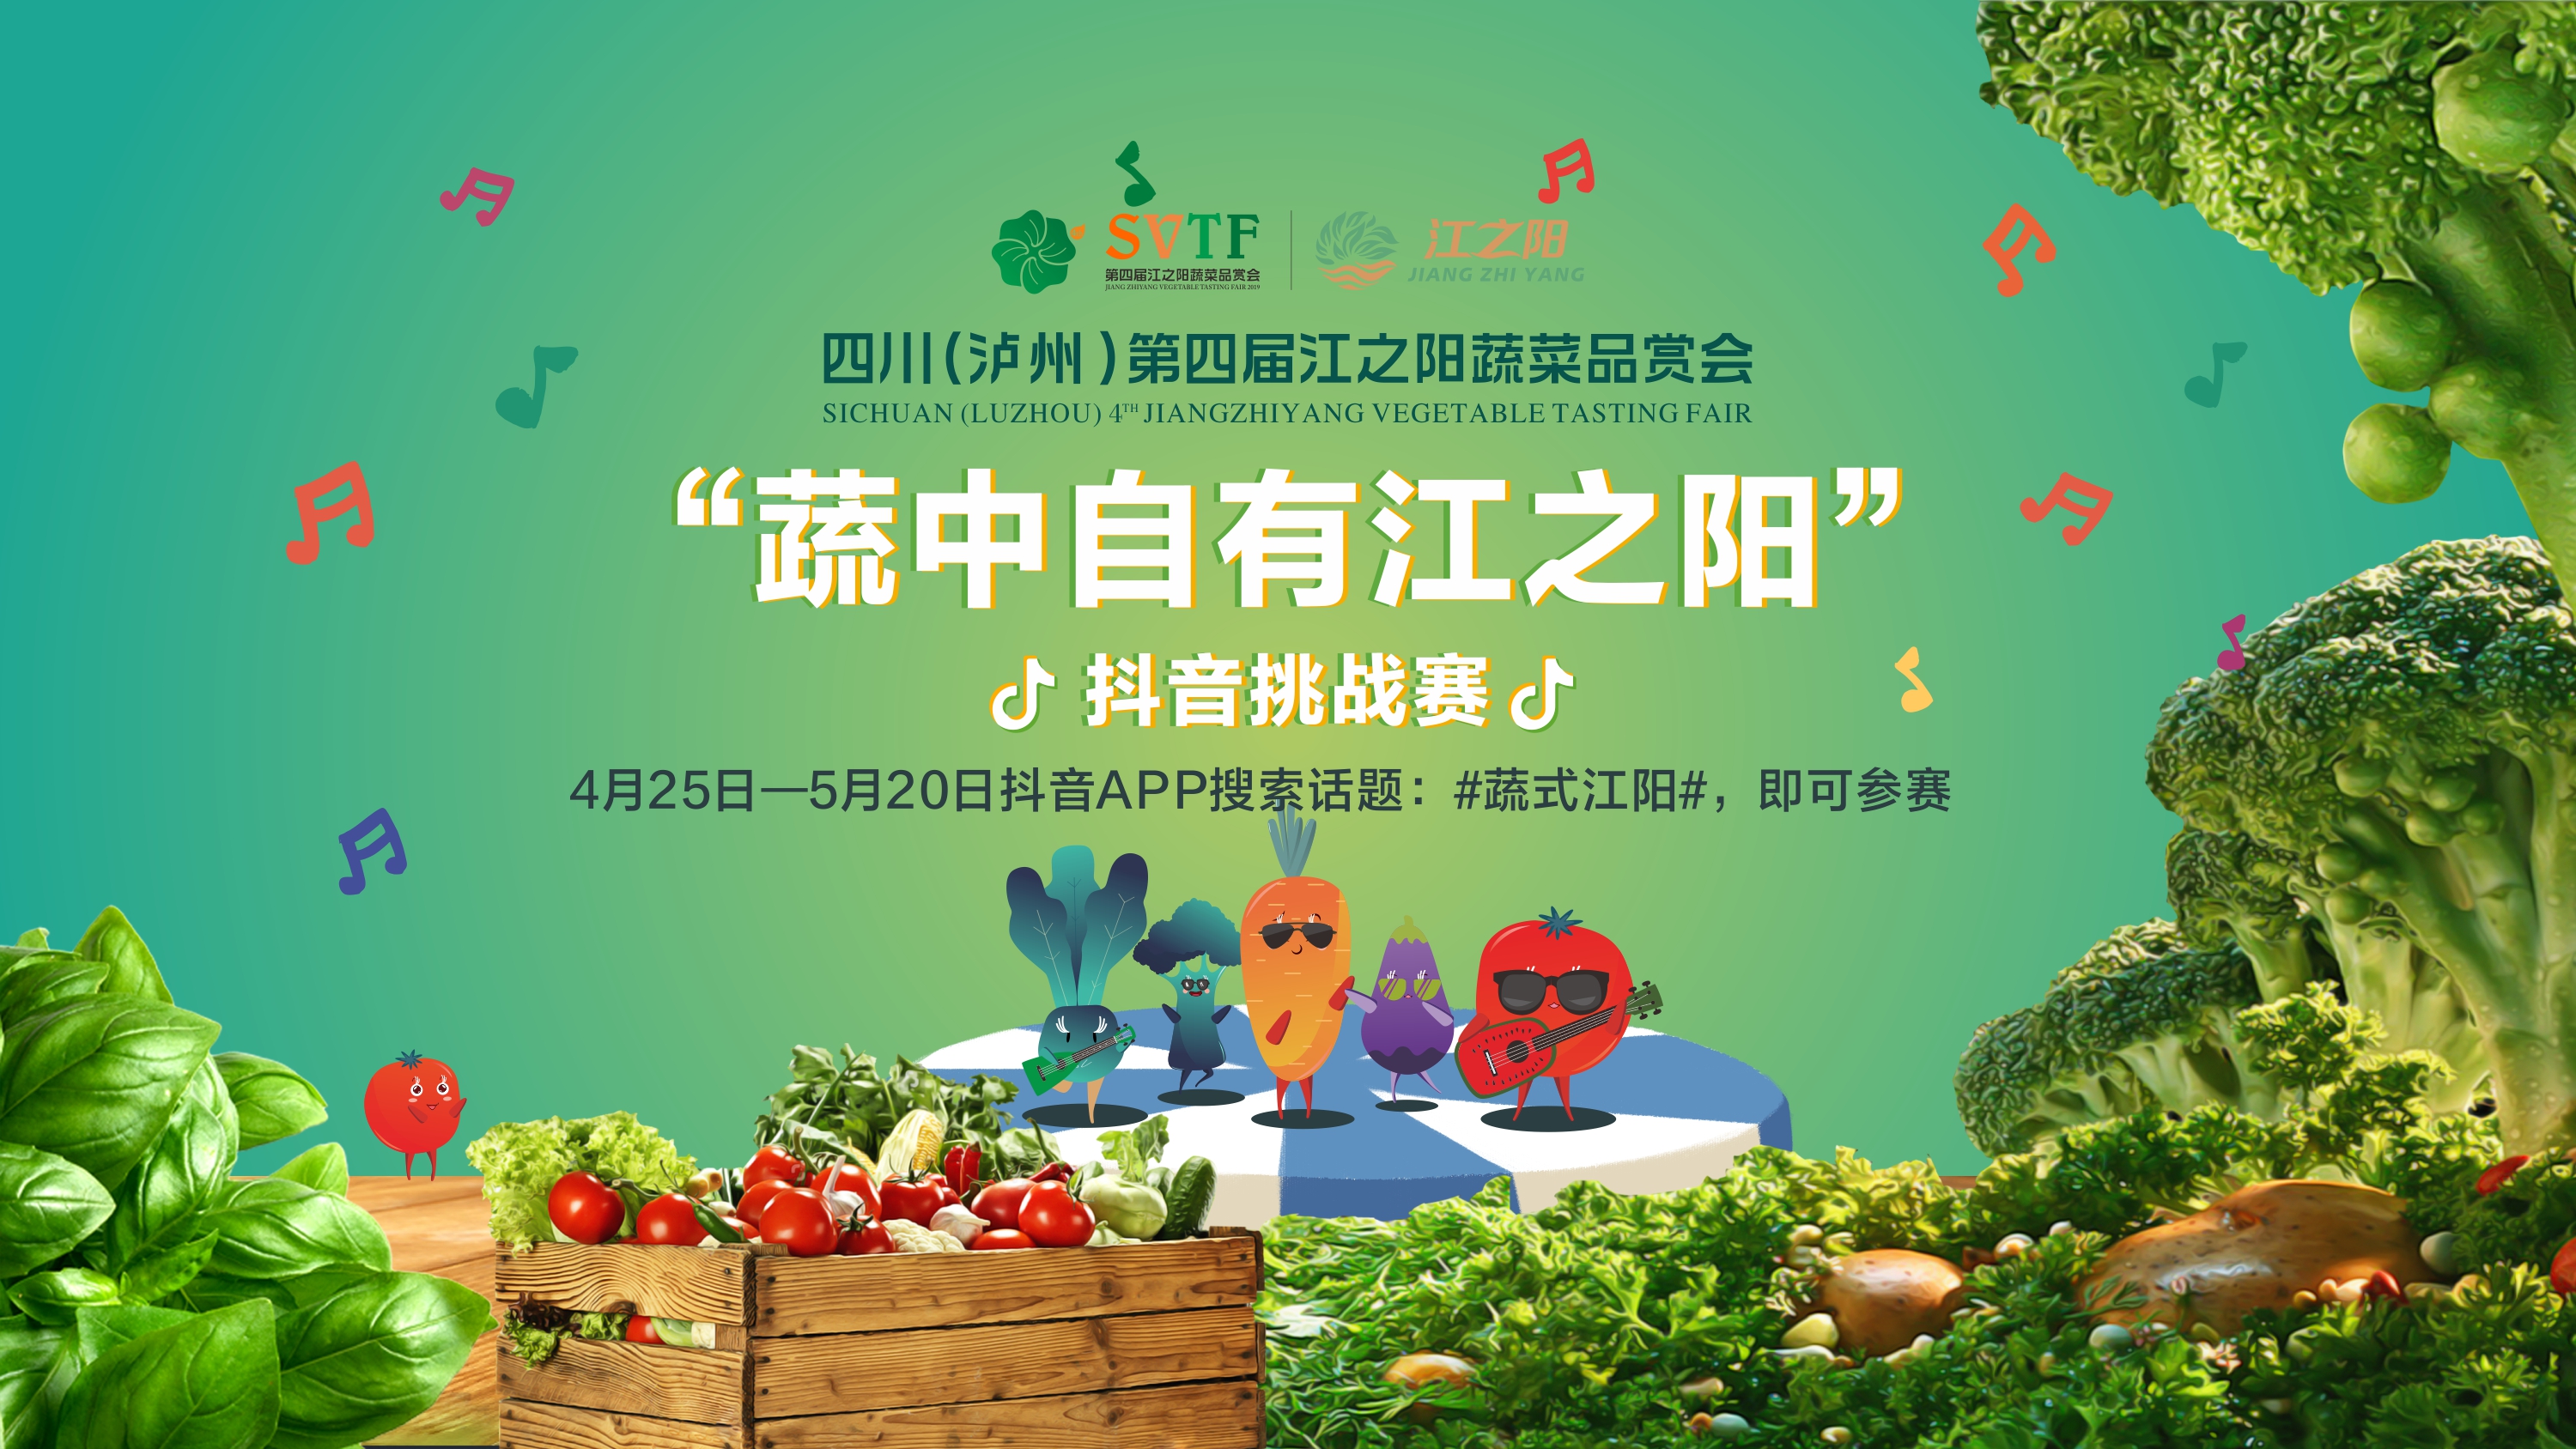 好吃好玩拿大奖 四川（泸州）第四届江之阳蔬菜品赏会邀你来